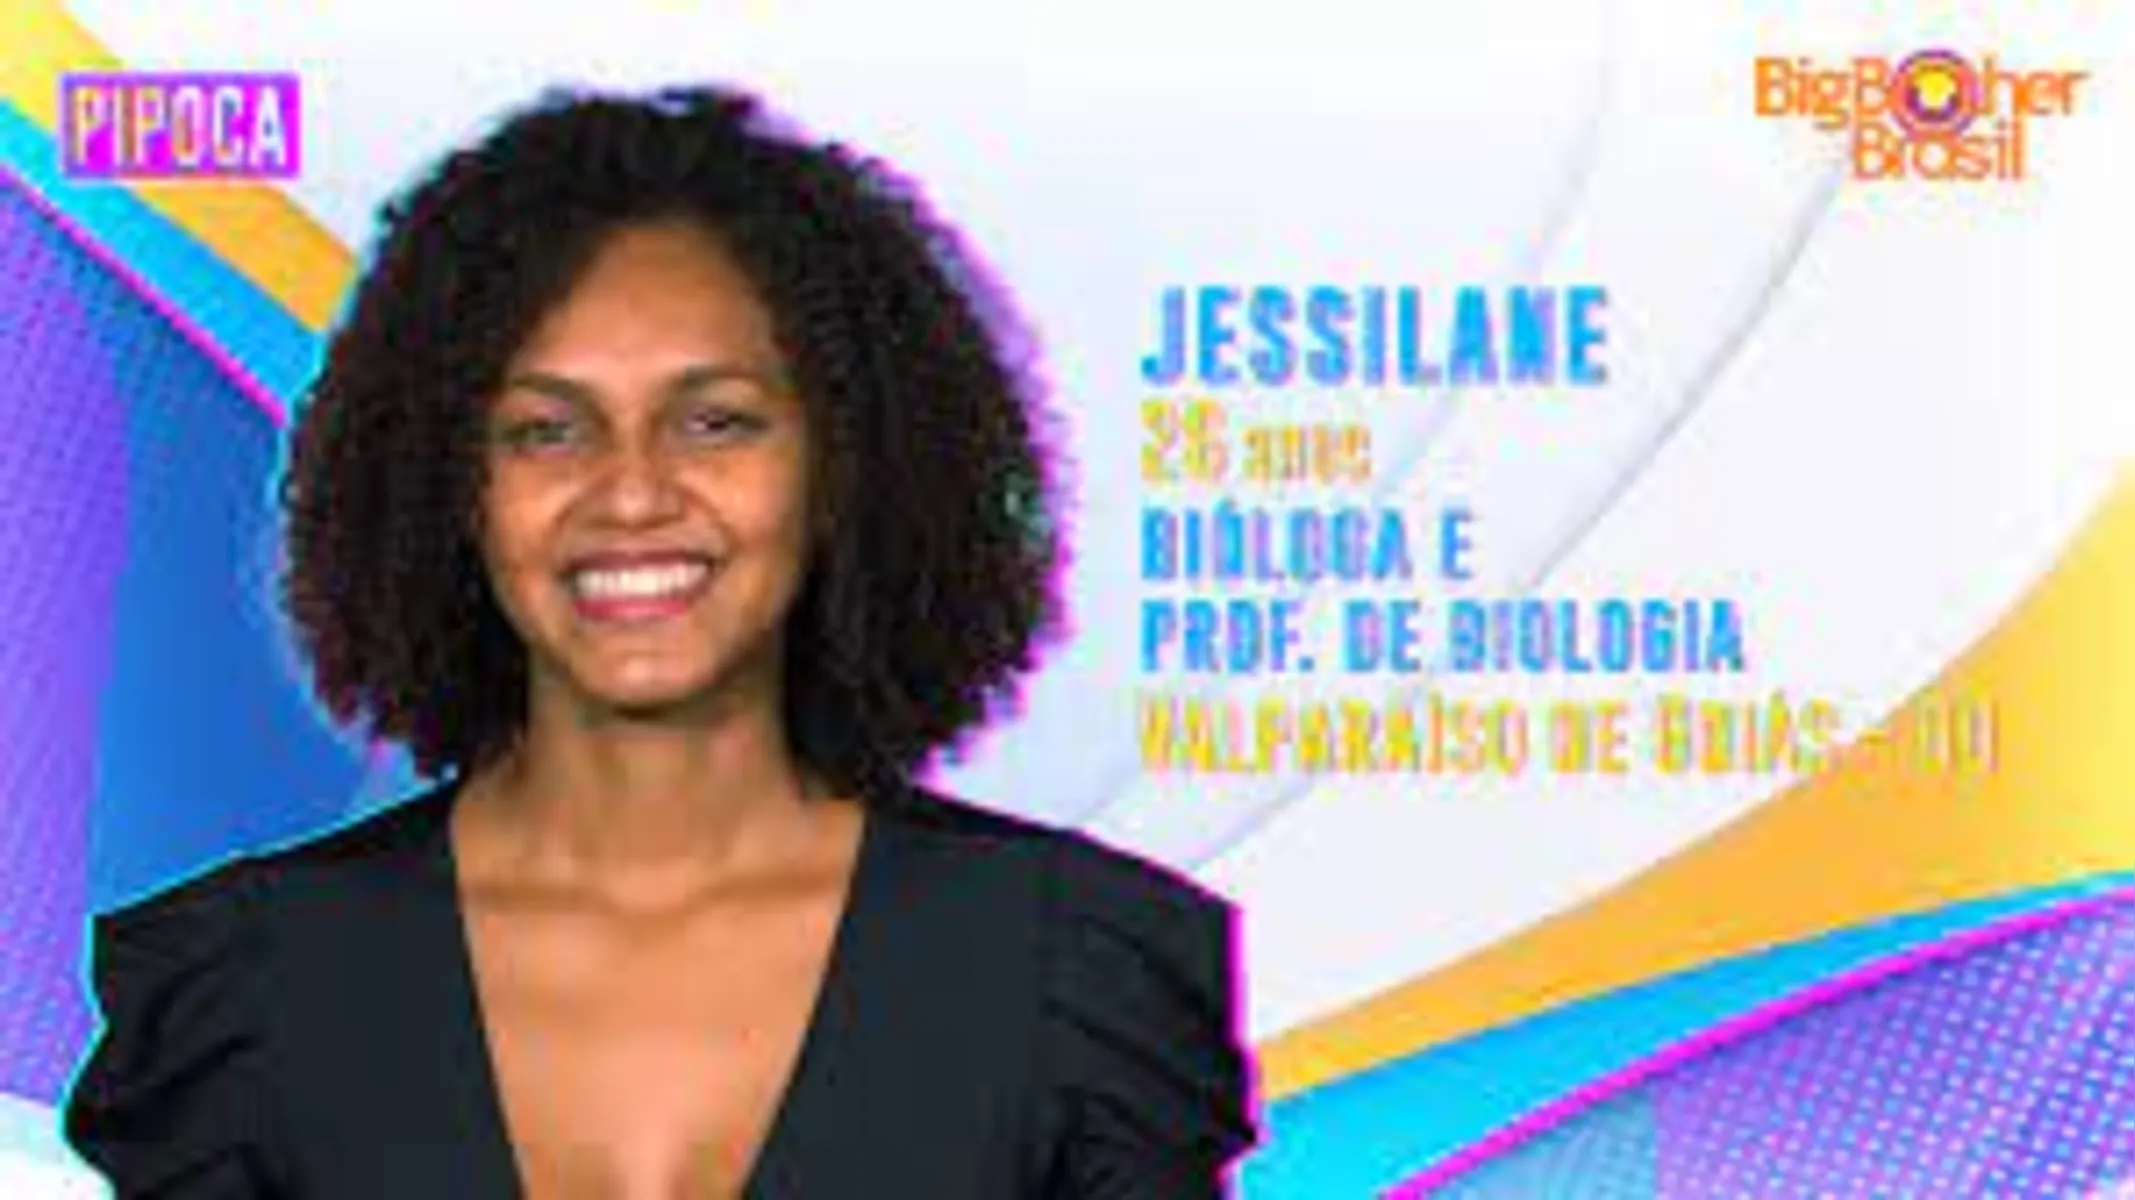 Jessilane recebeu 13,3% dos votos